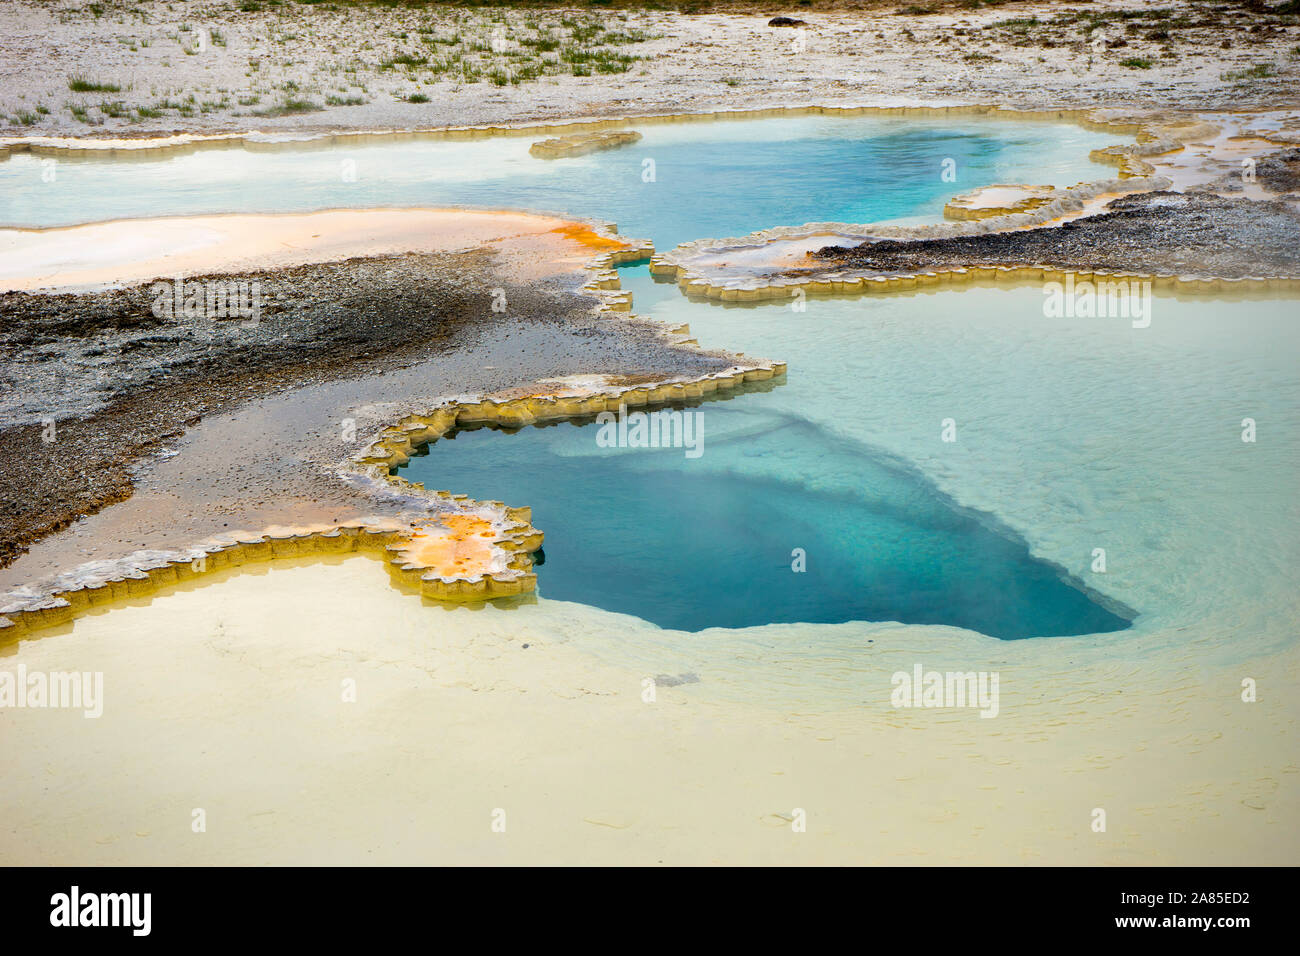 Caractéristiques de l'eau bleu piscine doublet et sinter colorés tapis geyserite Banque D'Images